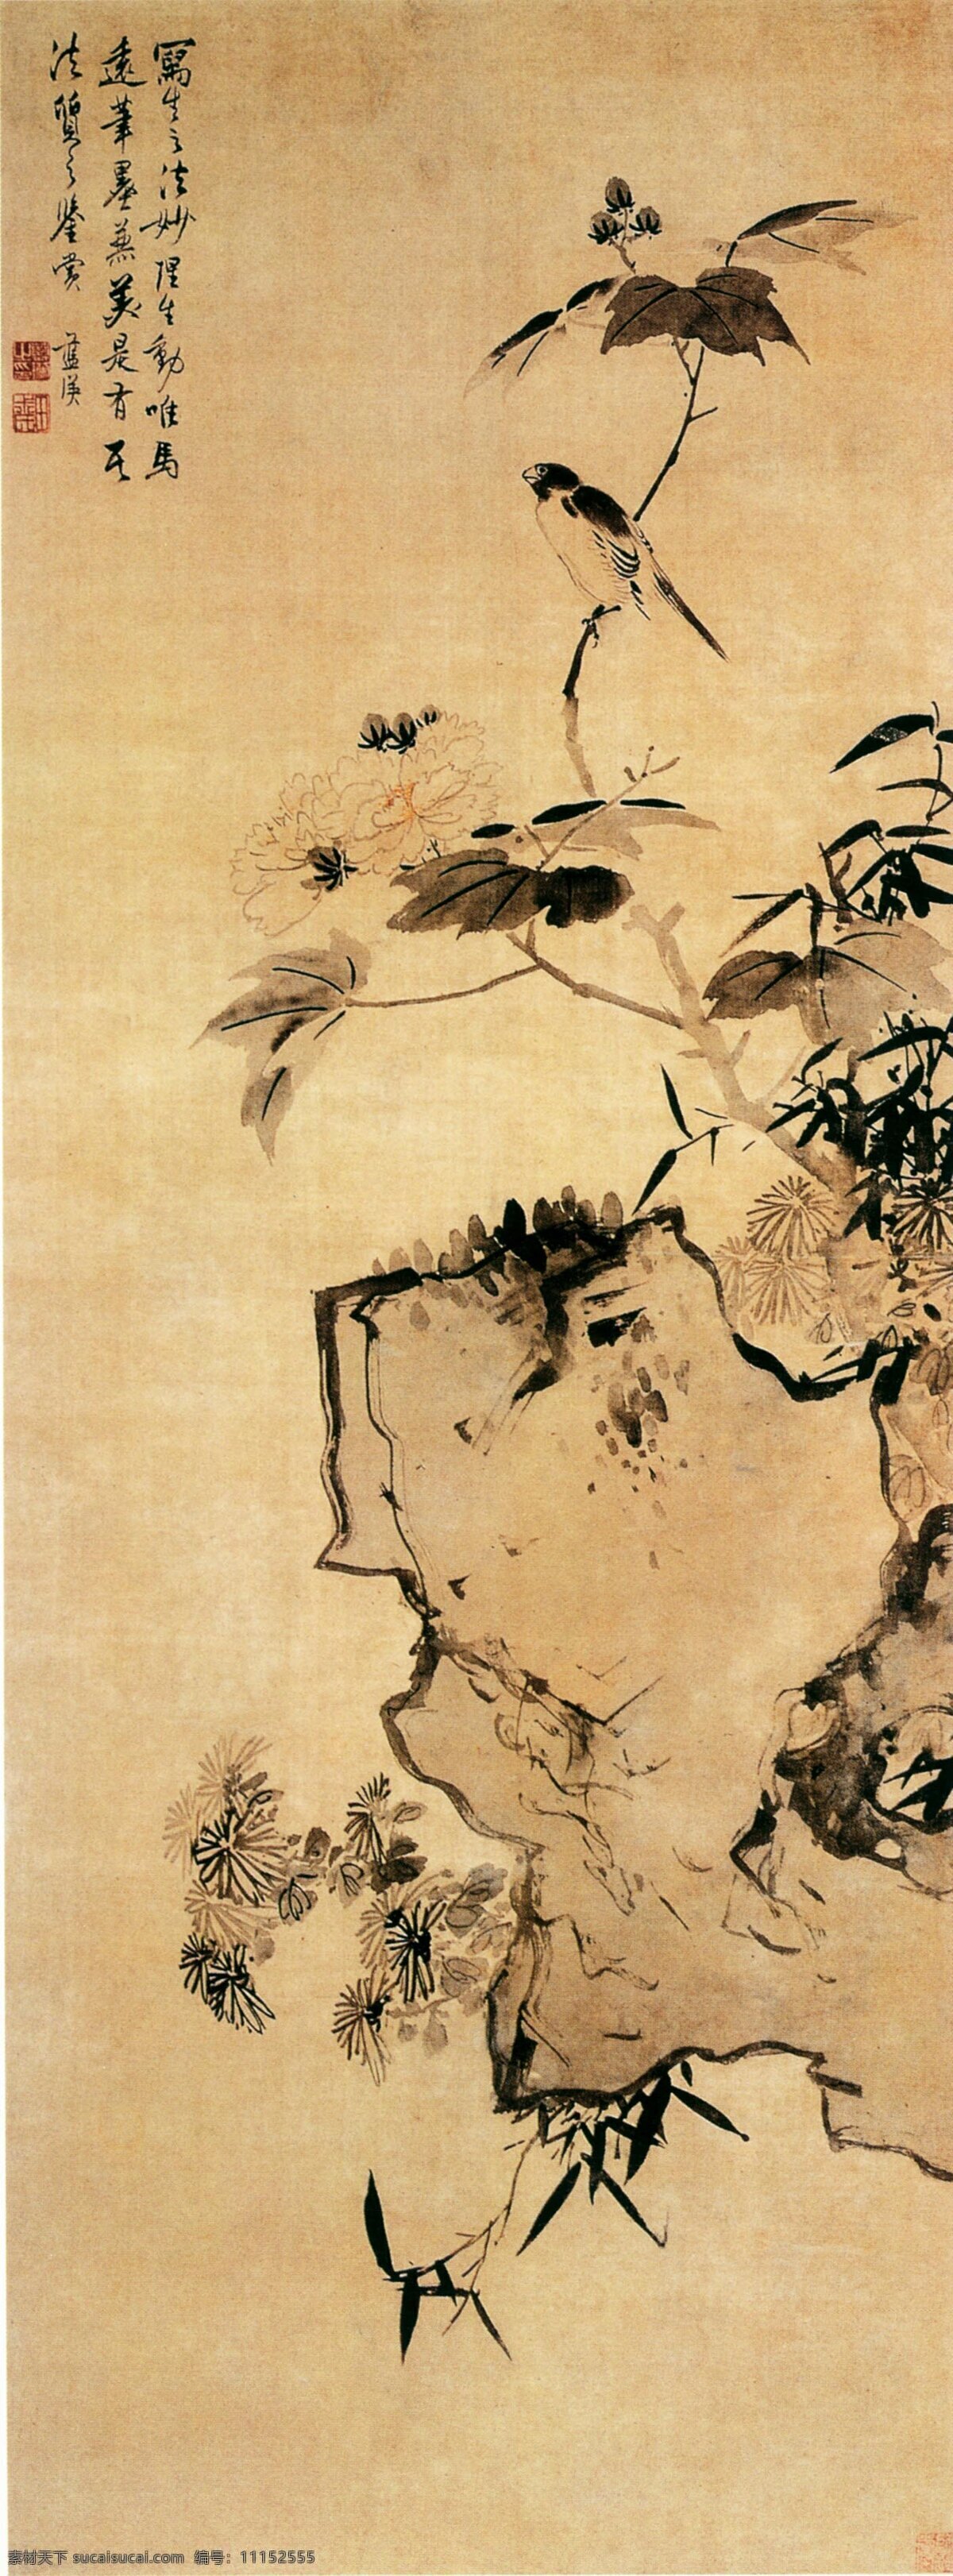 中国 花鸟 艺术 古典 古画 国画 绘画 水墨 中国画 中国花鸟艺术 中华传世国画 中国画艺术 文化艺术